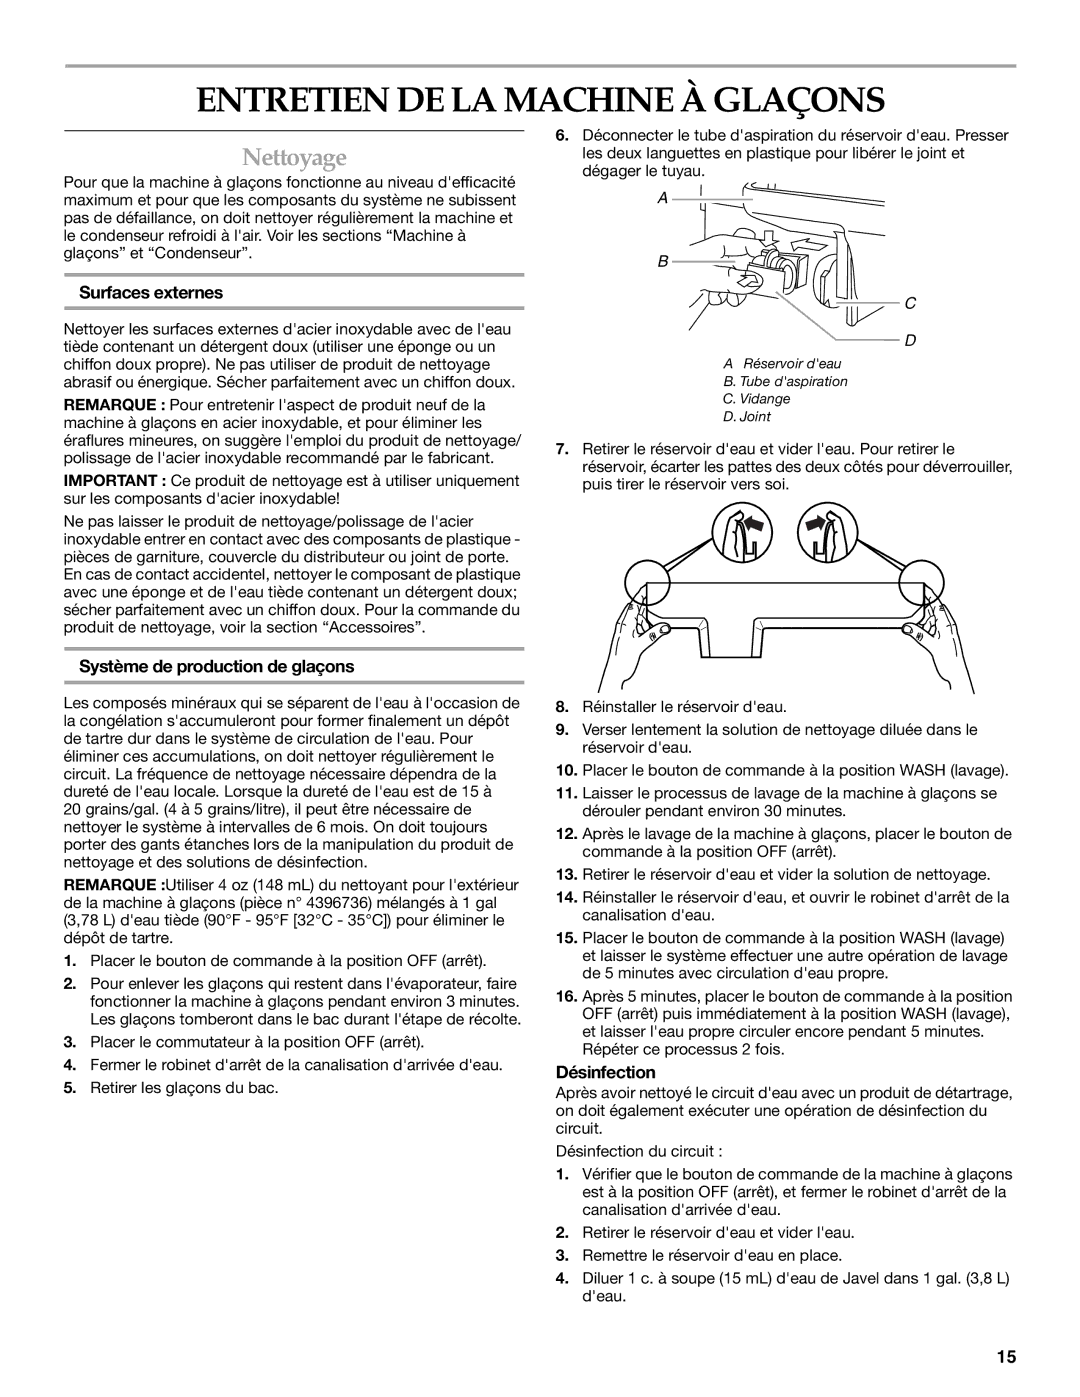 KitchenAid OUTDOOR ICE MAKER manual Entretien DE LA Machine À Glaçons, Nettoyage, Surfaces externes, Désinfection 